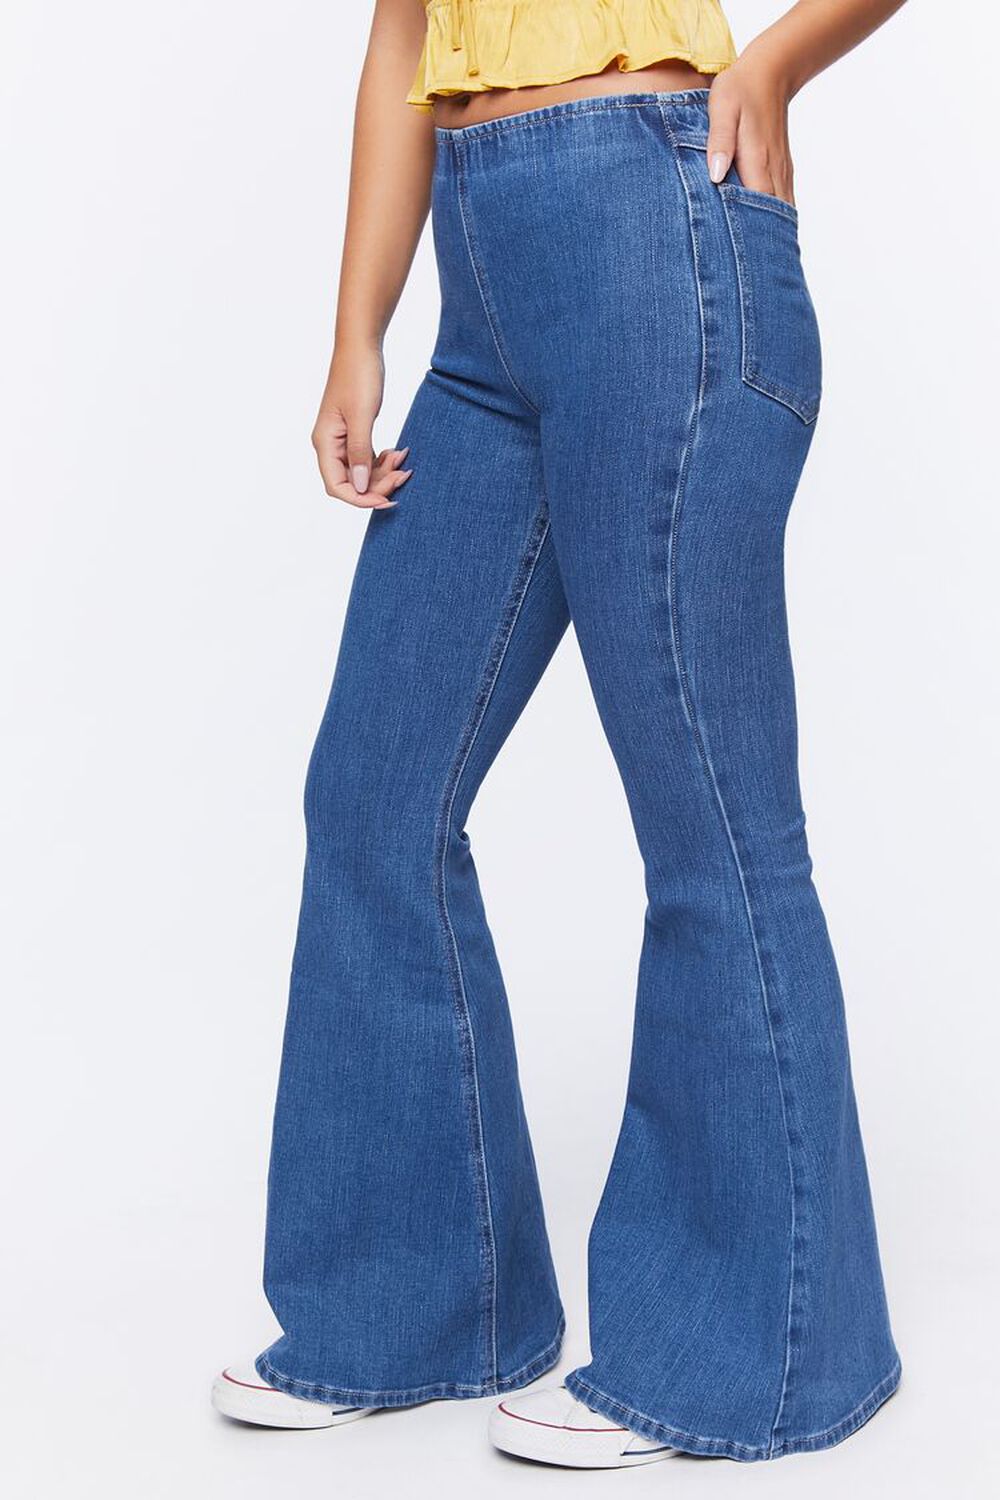 MEDIUM DENIM Premium Flare Jeans, image 3